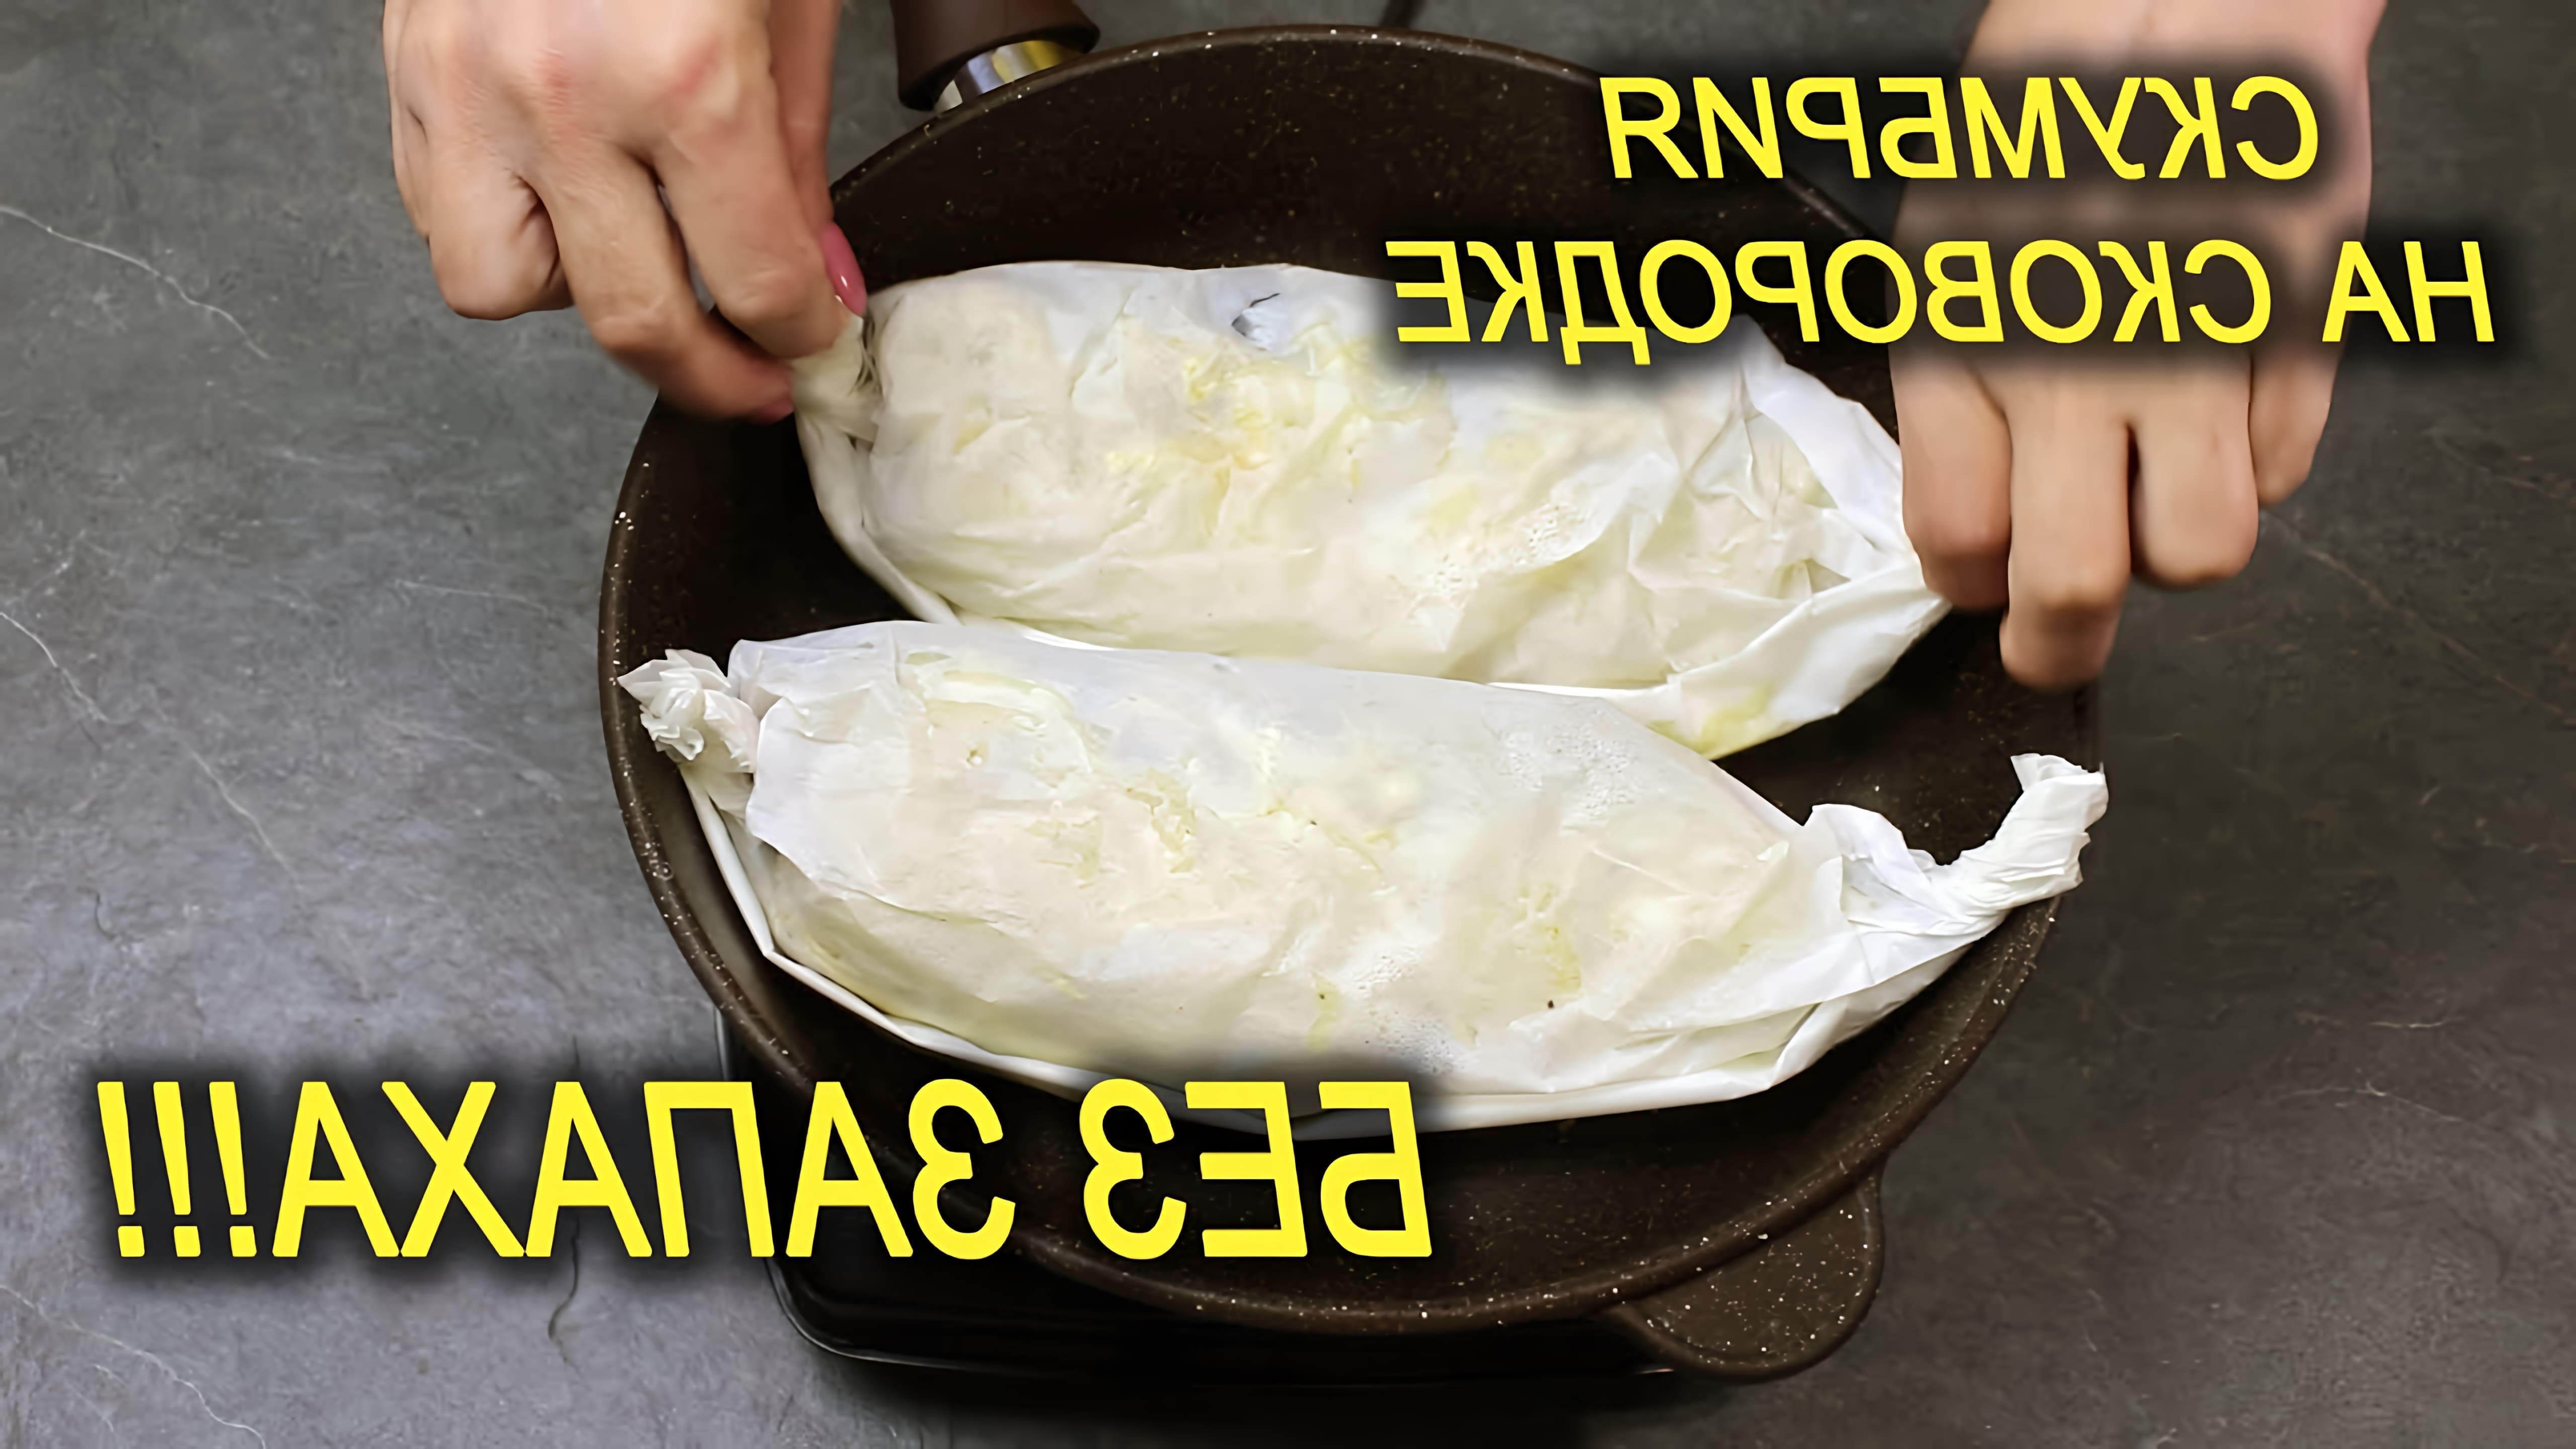 В этом видео-ролике рассказывается о простом и быстром способе приготовления скумбрии без использования масла или жира